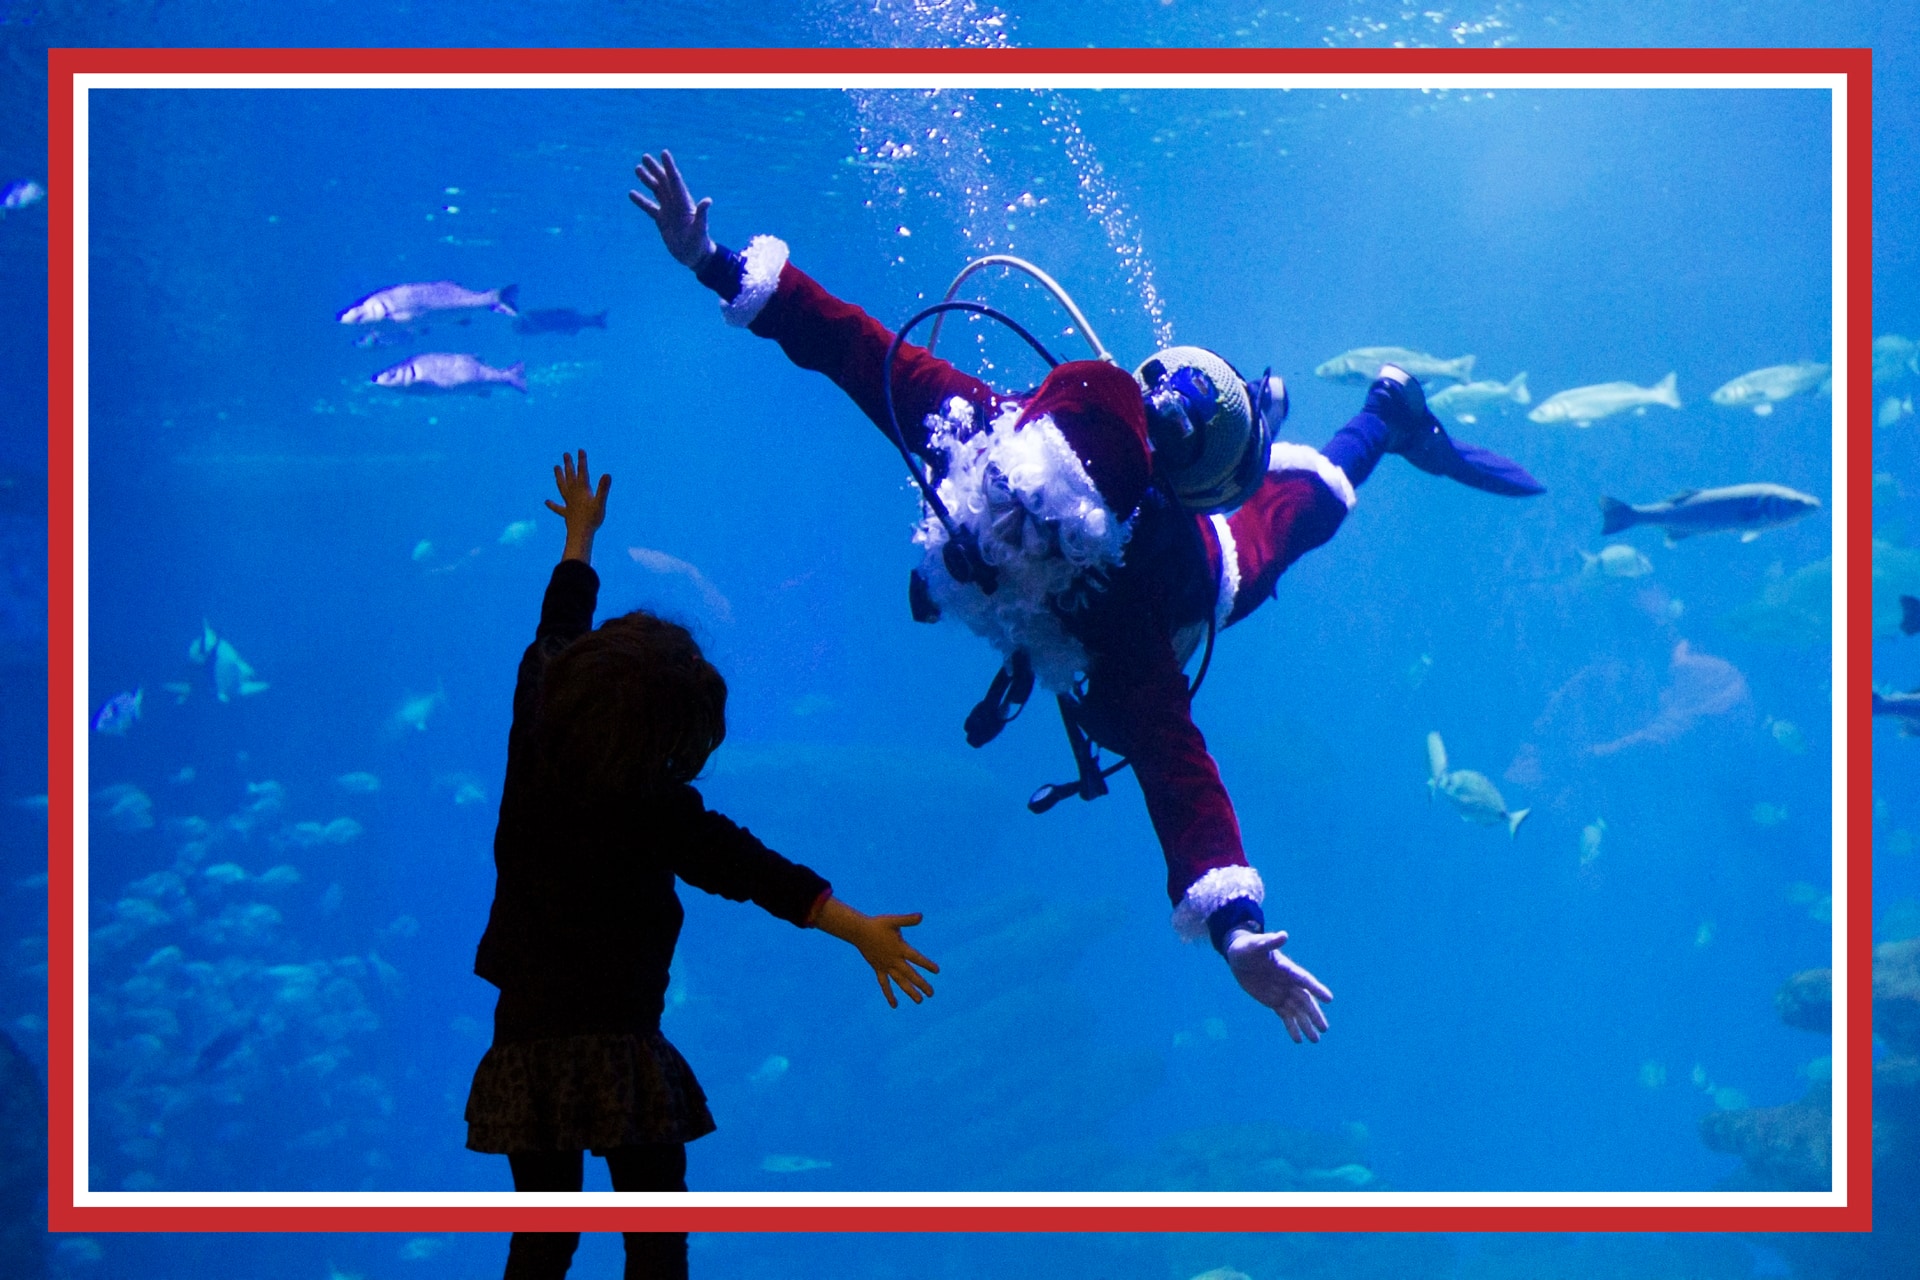 4 regalos originales para navidad: Aqua - Experiencias - Palma Aquarium